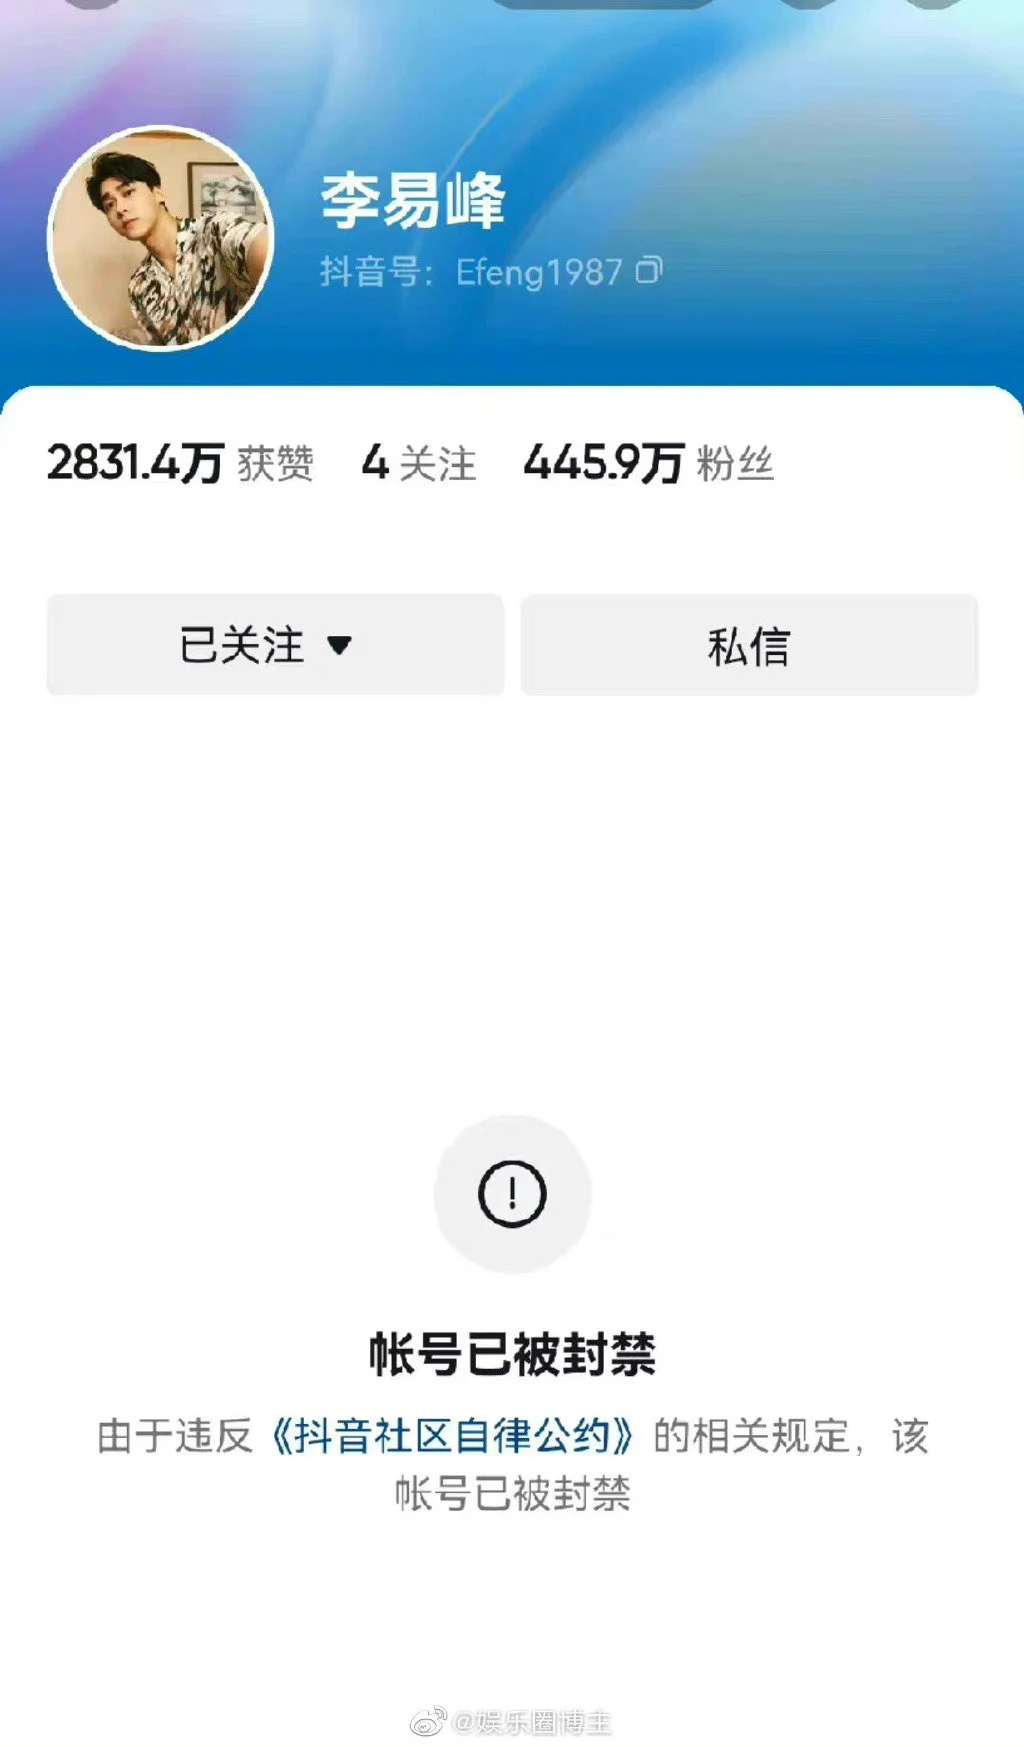 李易峰及其工作室微博抖音账号被封禁